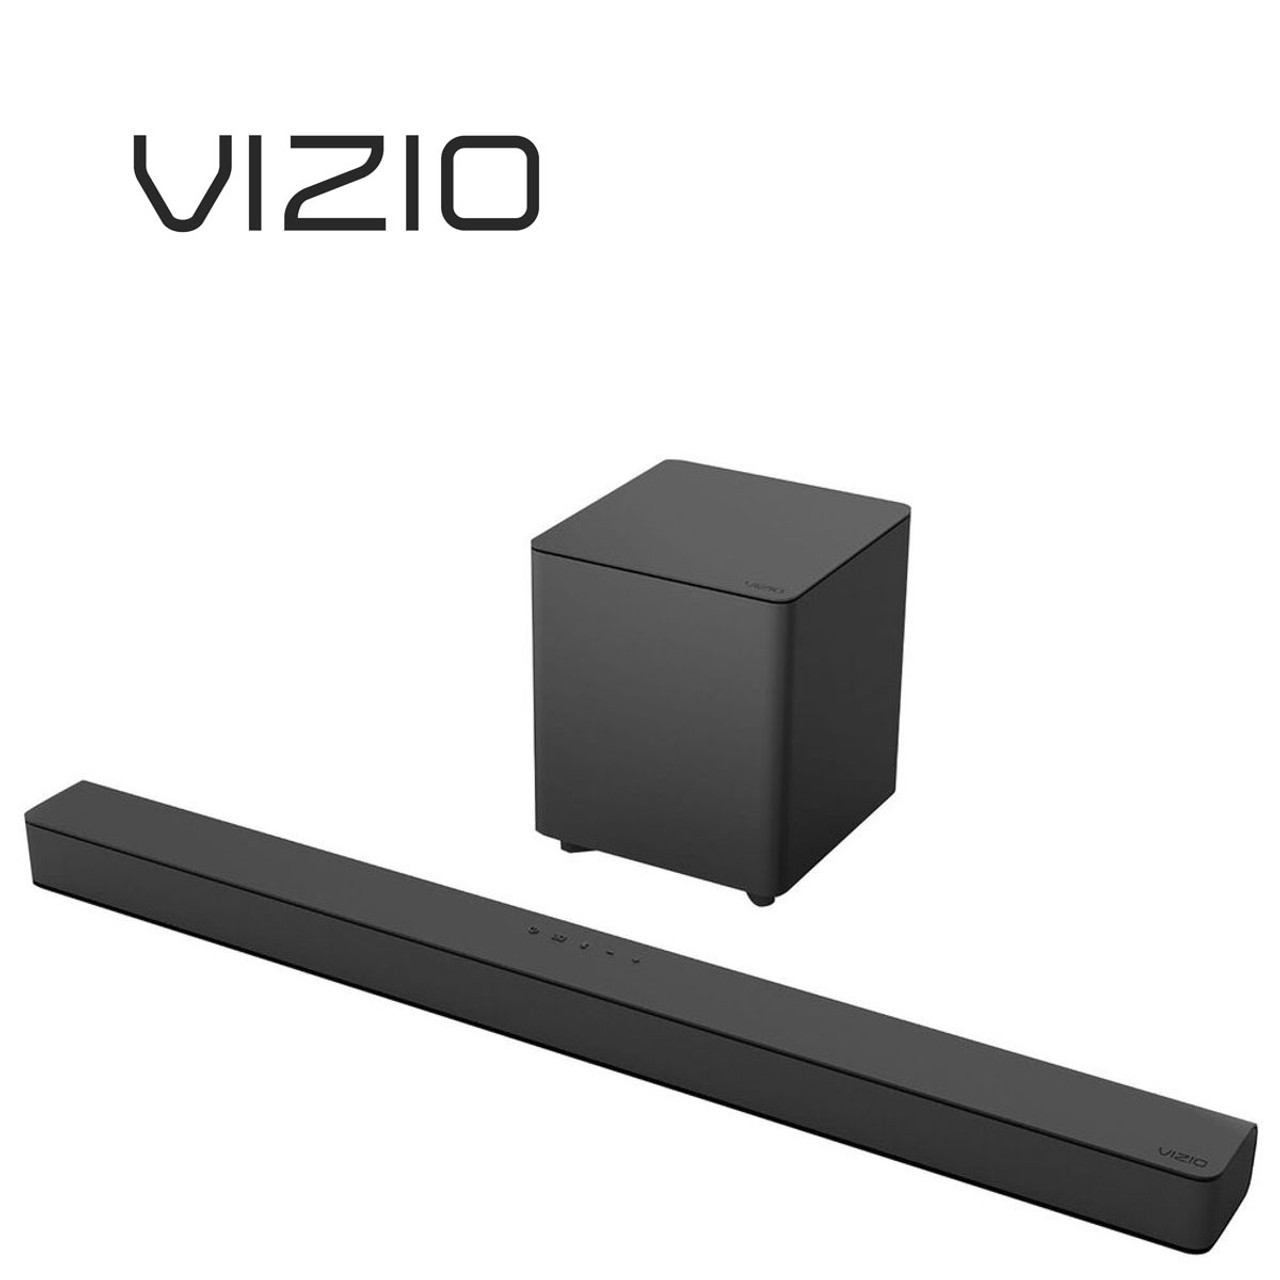 V-Series 2.1 Sound Bar